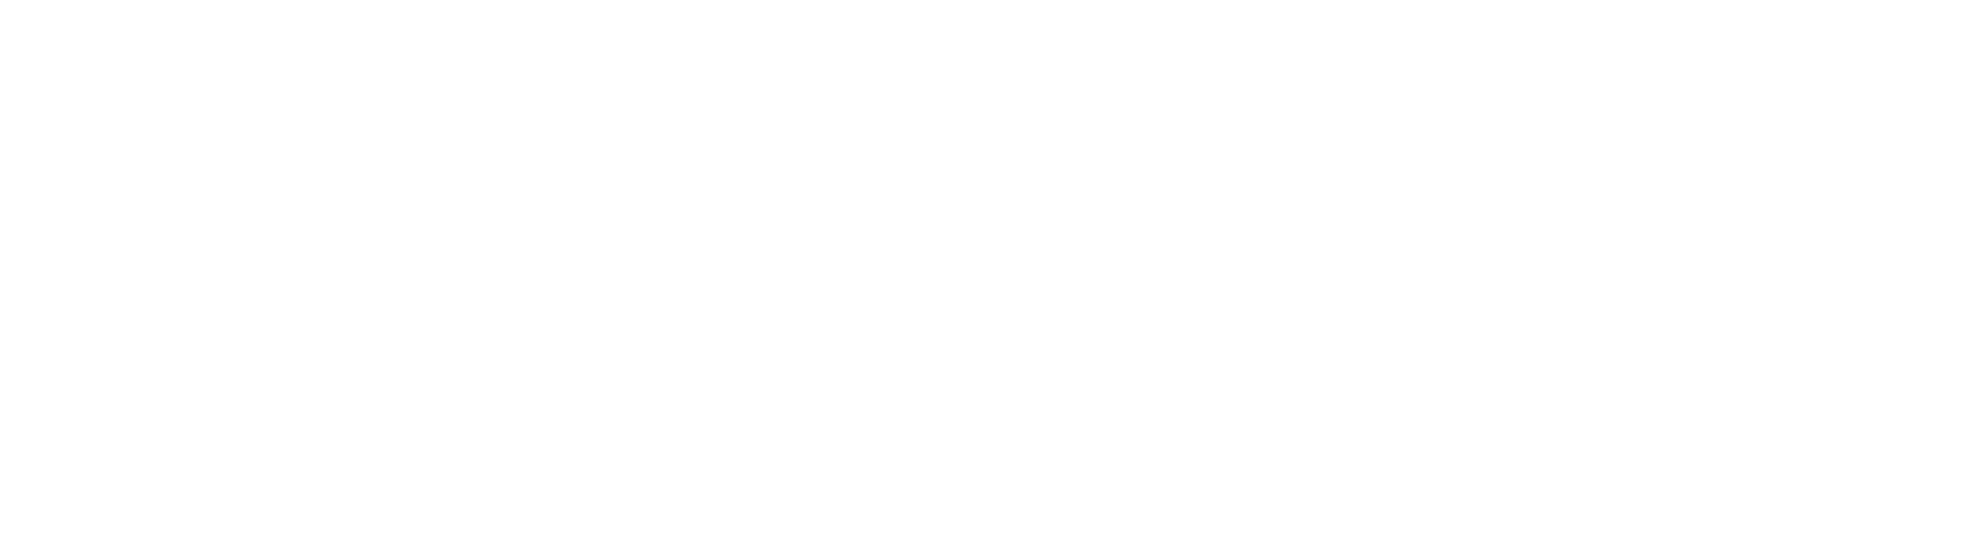 Watson Co